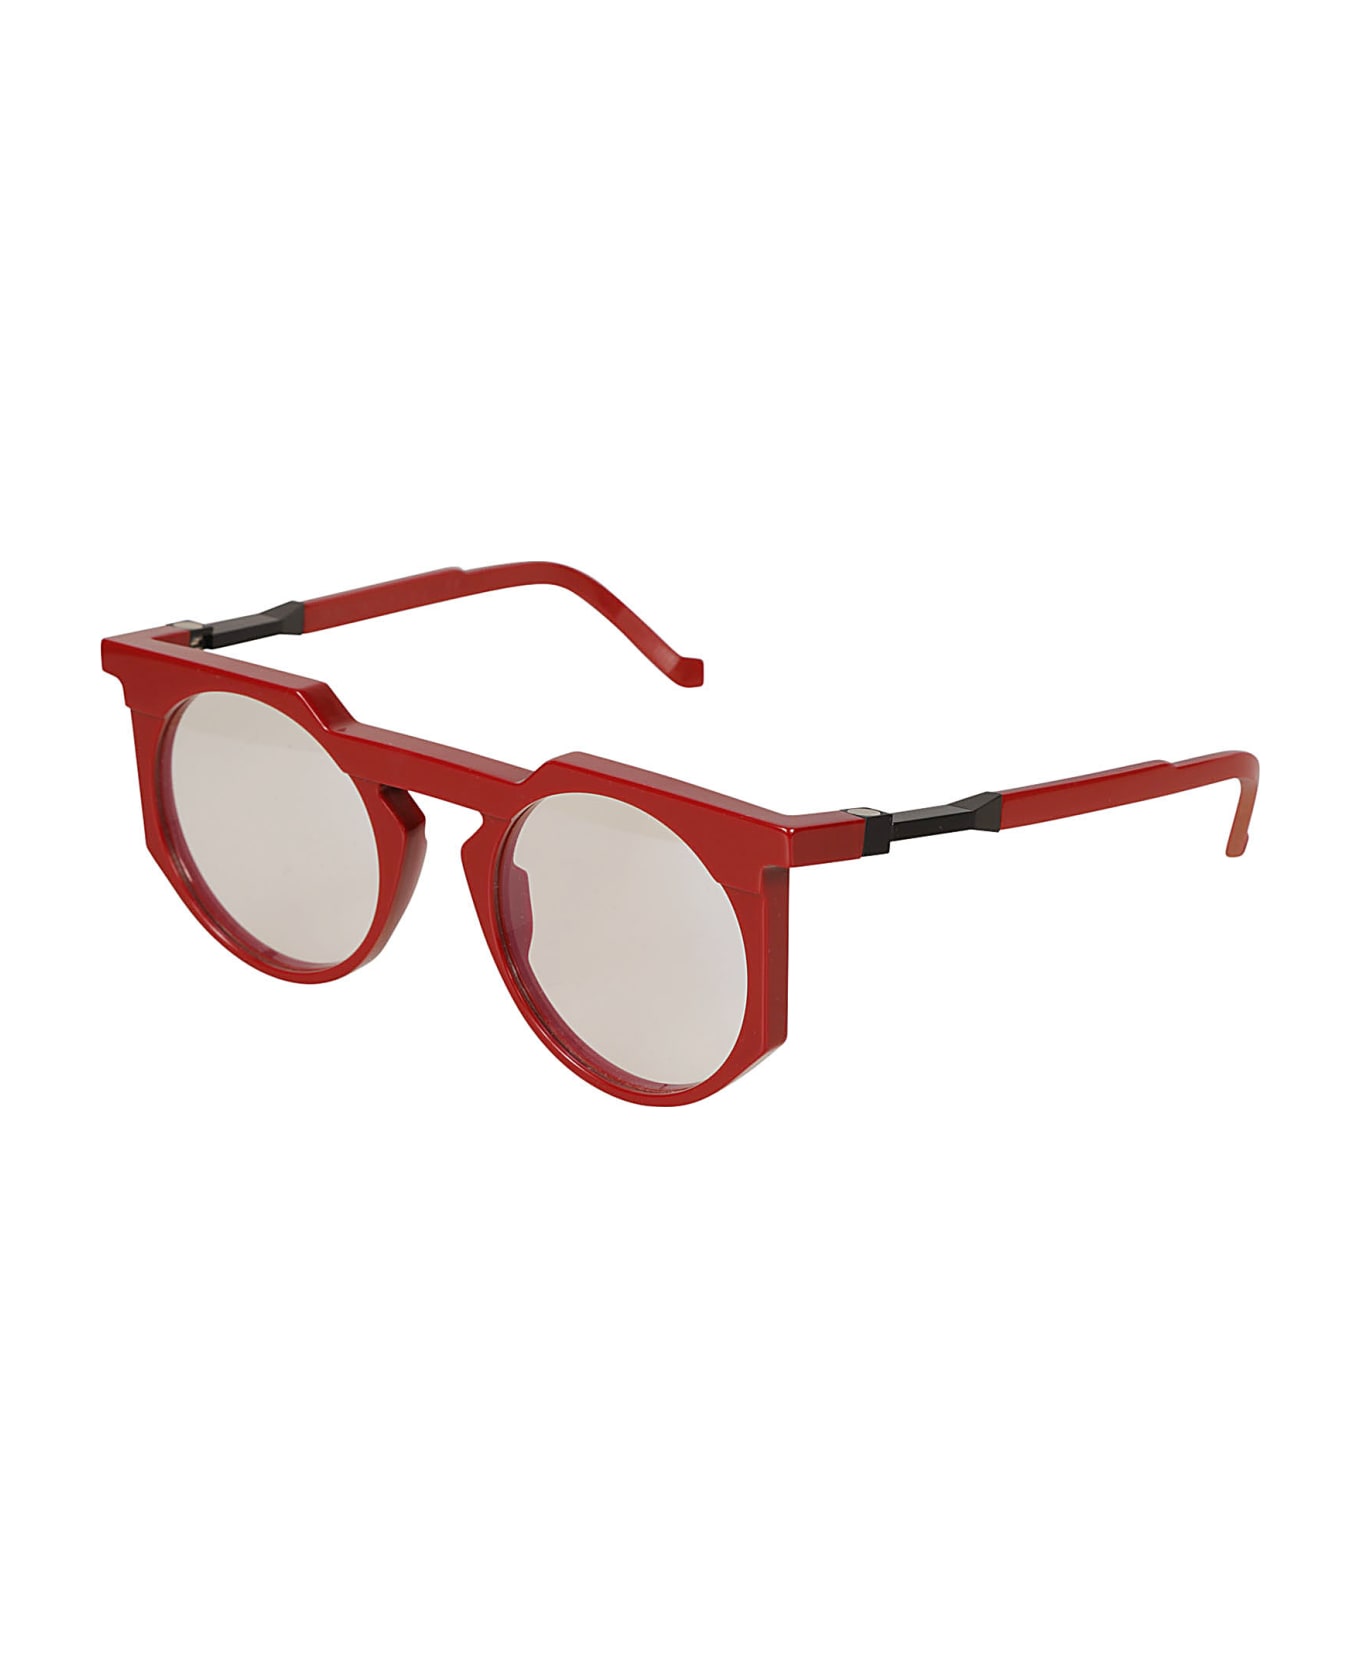 VAVA Clear Lens Round Frame Glasses Glasses - Red アイウェア